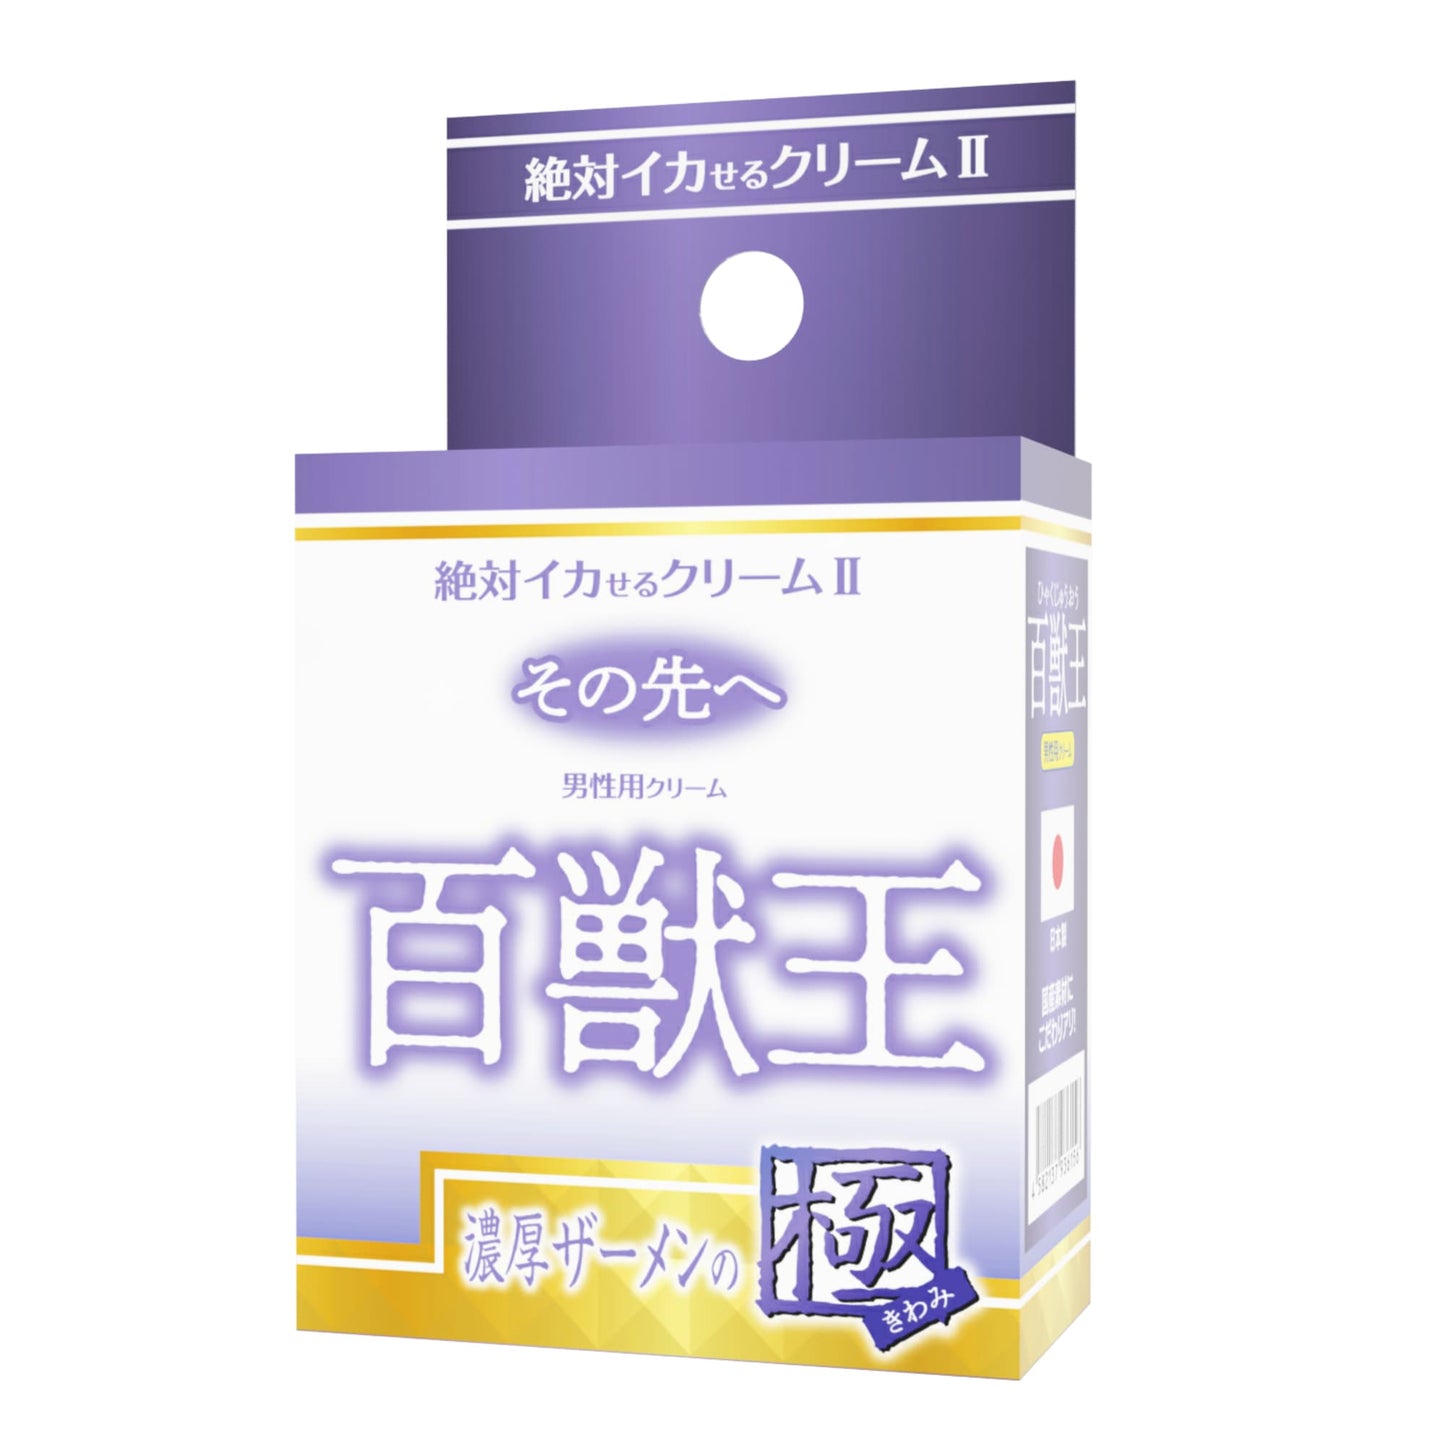 SSI JAPAN 【男性用】絕對增強軟膏 第 2 代 百獸王 濃厚精液の極 增硬增大軟膏及噴霧 購買